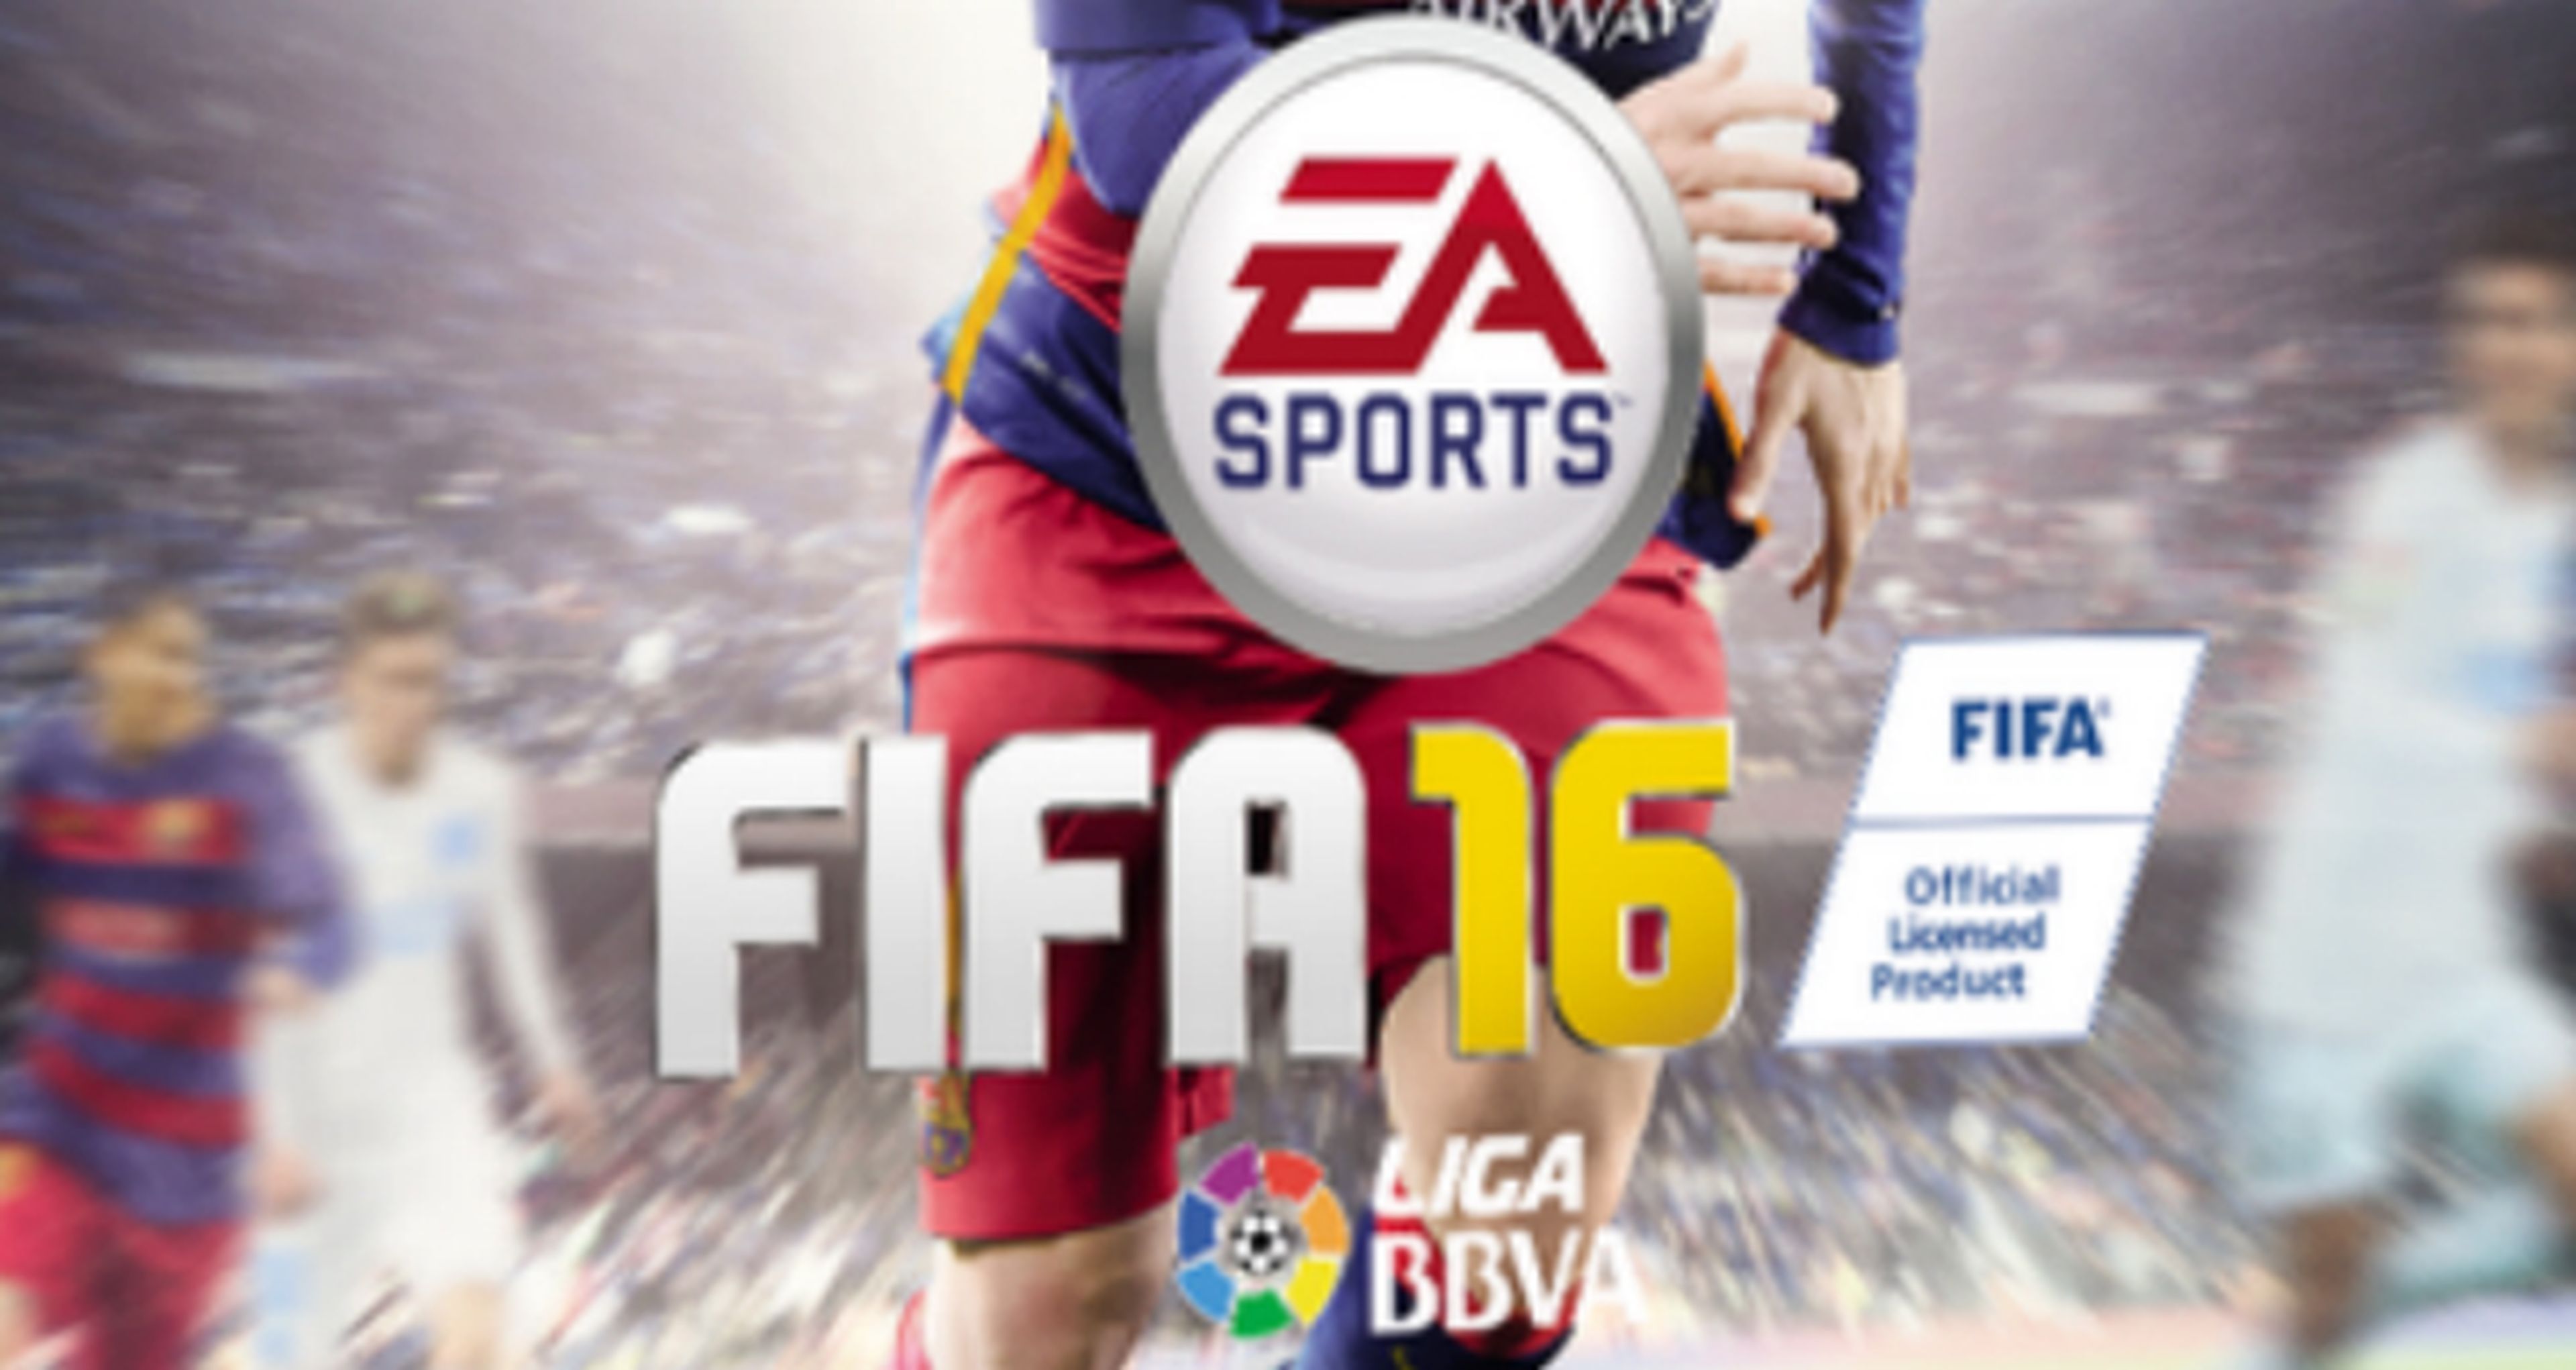 FIFA 16 presenta su nueva portada con Messi